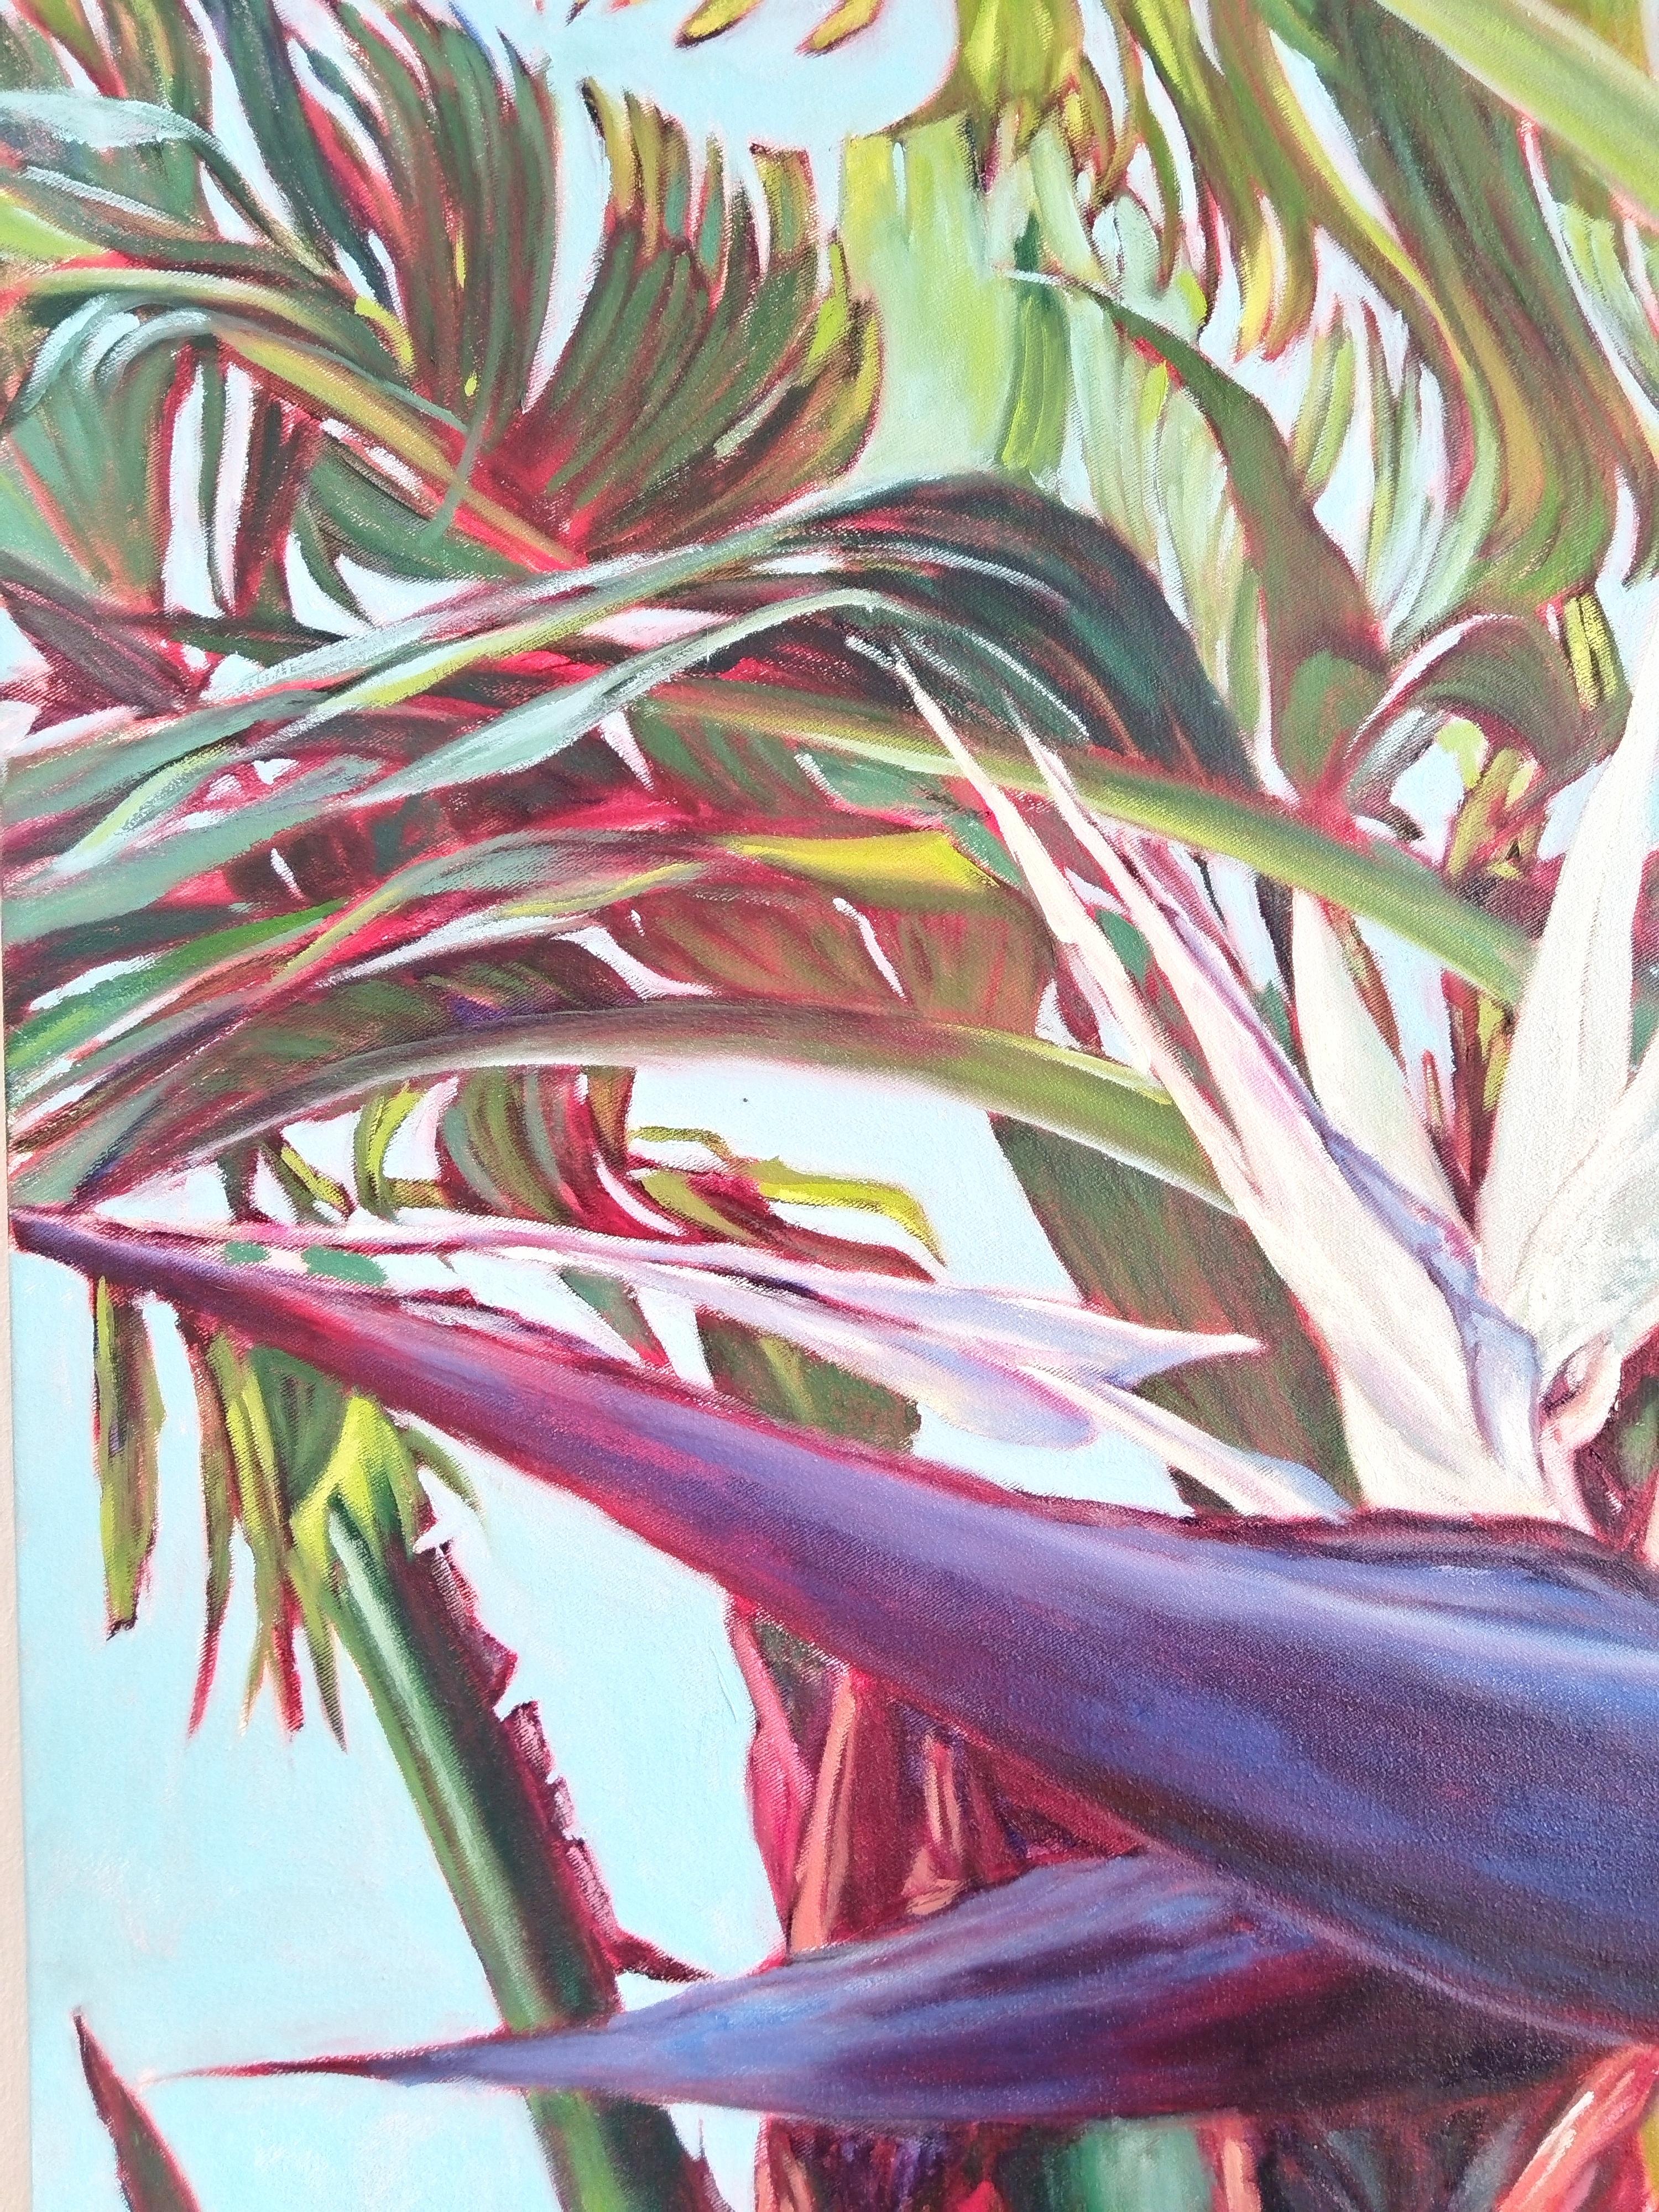 Ein großes, einzigartiges Ölgemälde auf gespannter Leinwand, fertig zum Aufhängen. Das Kunstwerk zeigt tropische Pflanzen in Nahaufnahme in schönen und satten Farben.
Einrahmungsoptionen sind auf Anfrage erhältlich